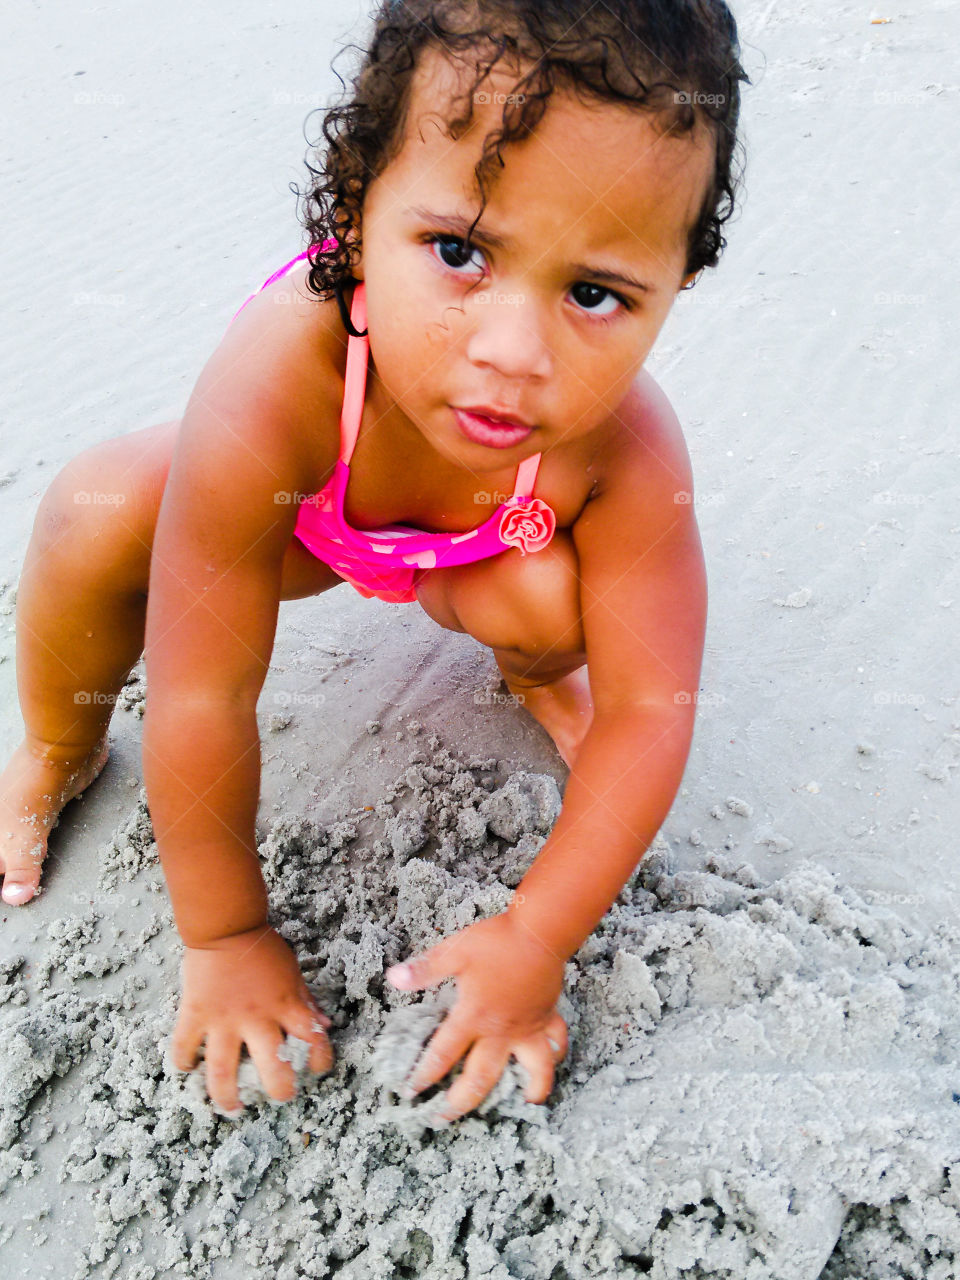 Fun in the Sand and Sun